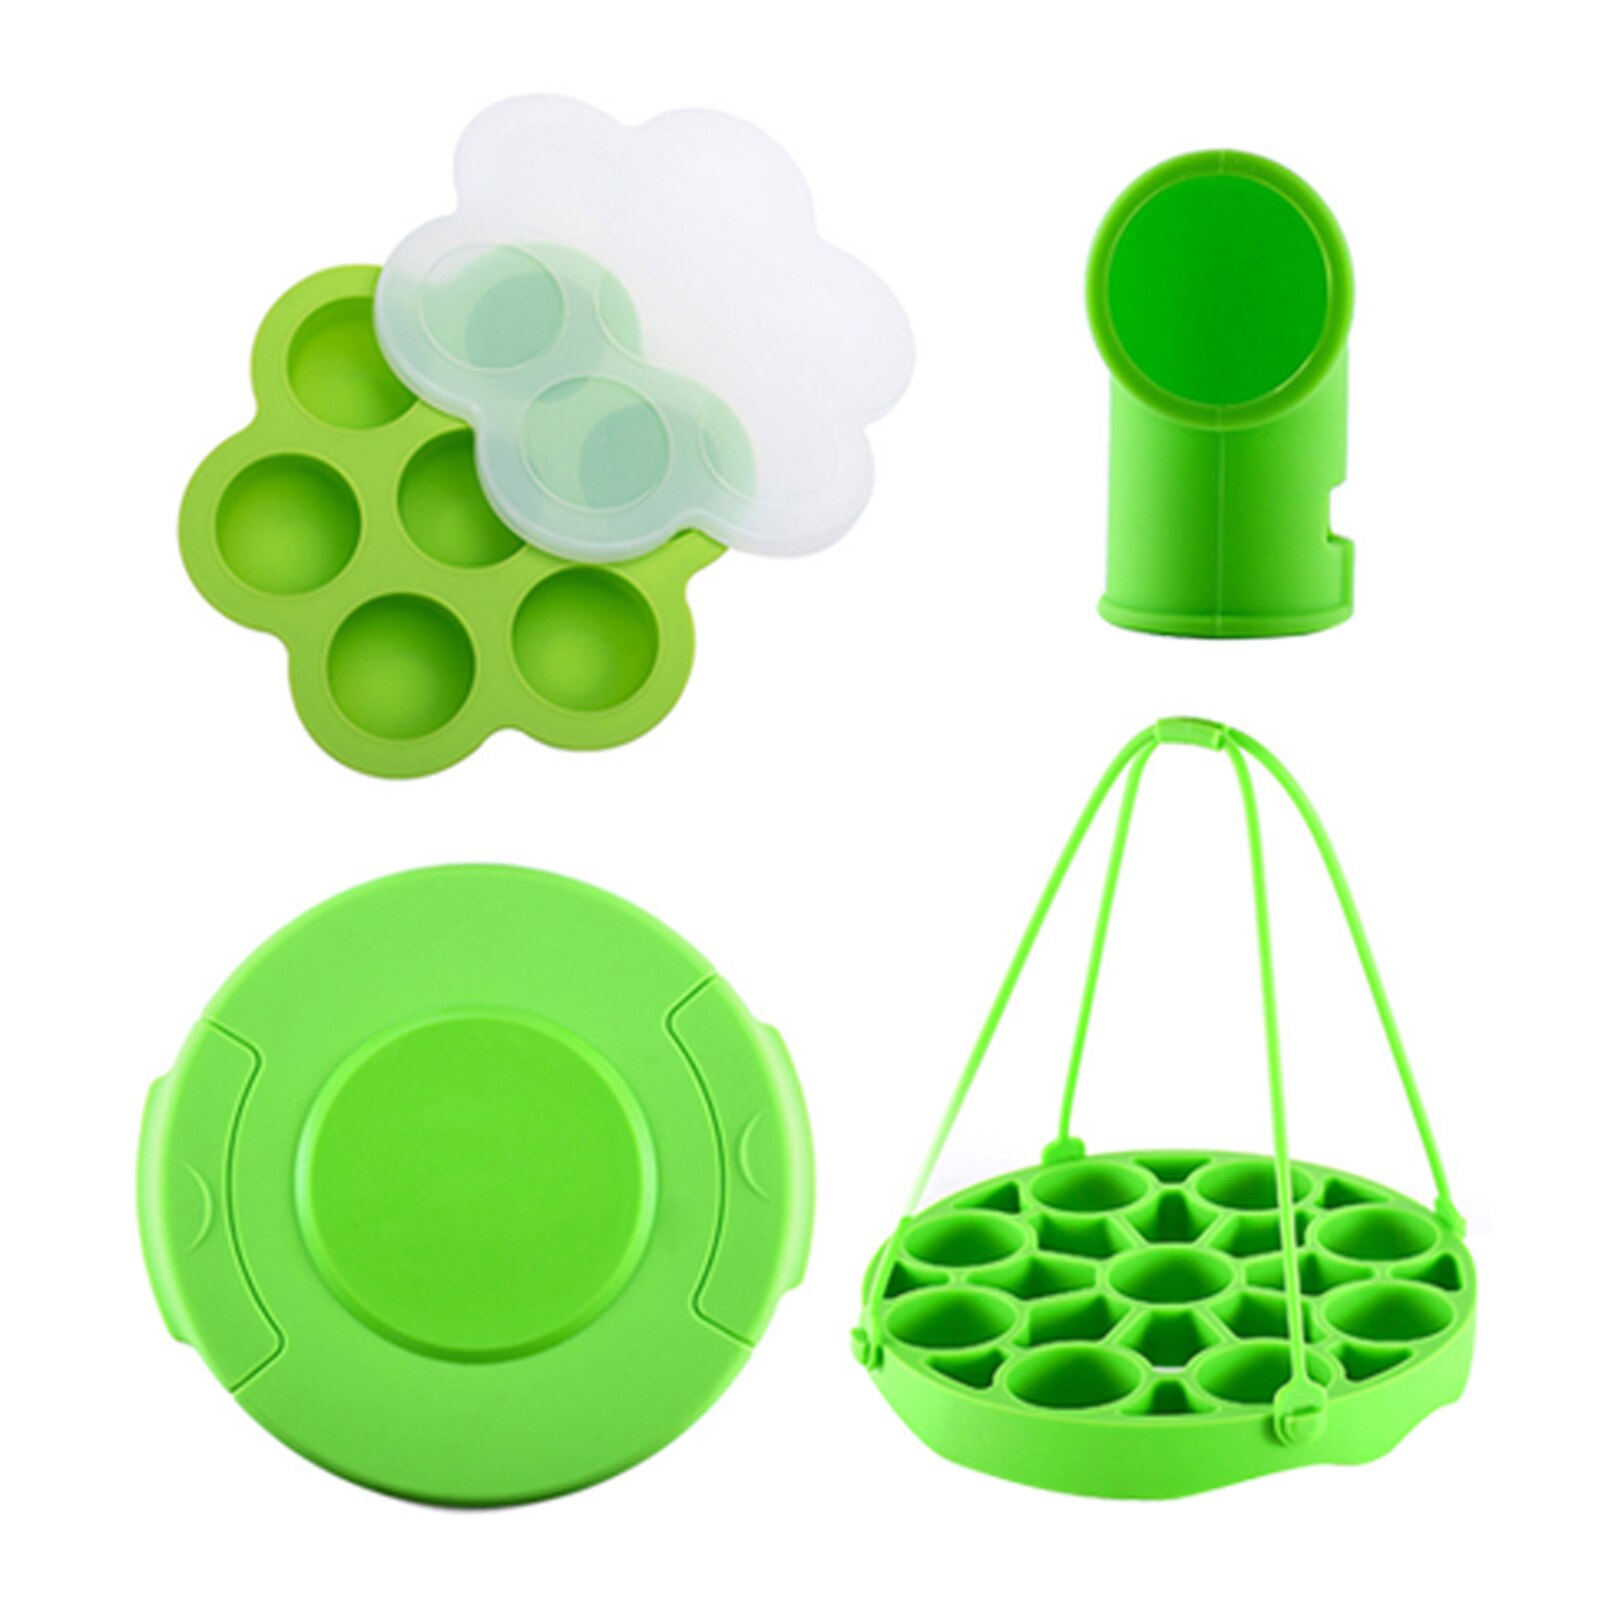 4 stk / sæt køkken silikone med låg dampet æg rack hjem udluftningsventil værktøj forsegling trykkoger tilbehør løfter sikkert: Grøn